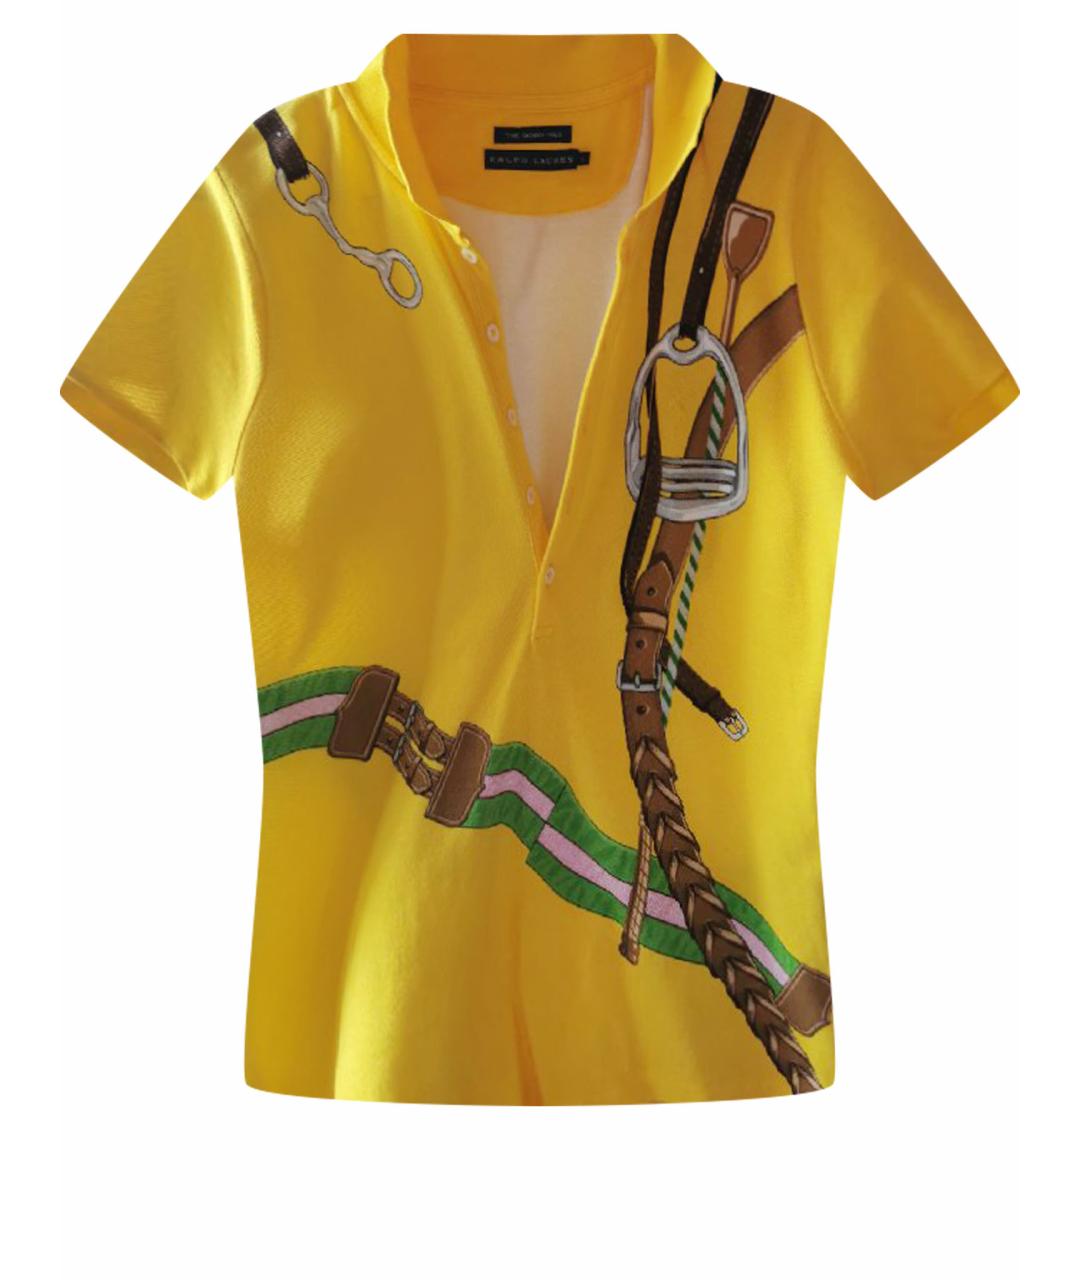 RALPH LAUREN Желтая хлопковая кэжуал рубашка, фото 1